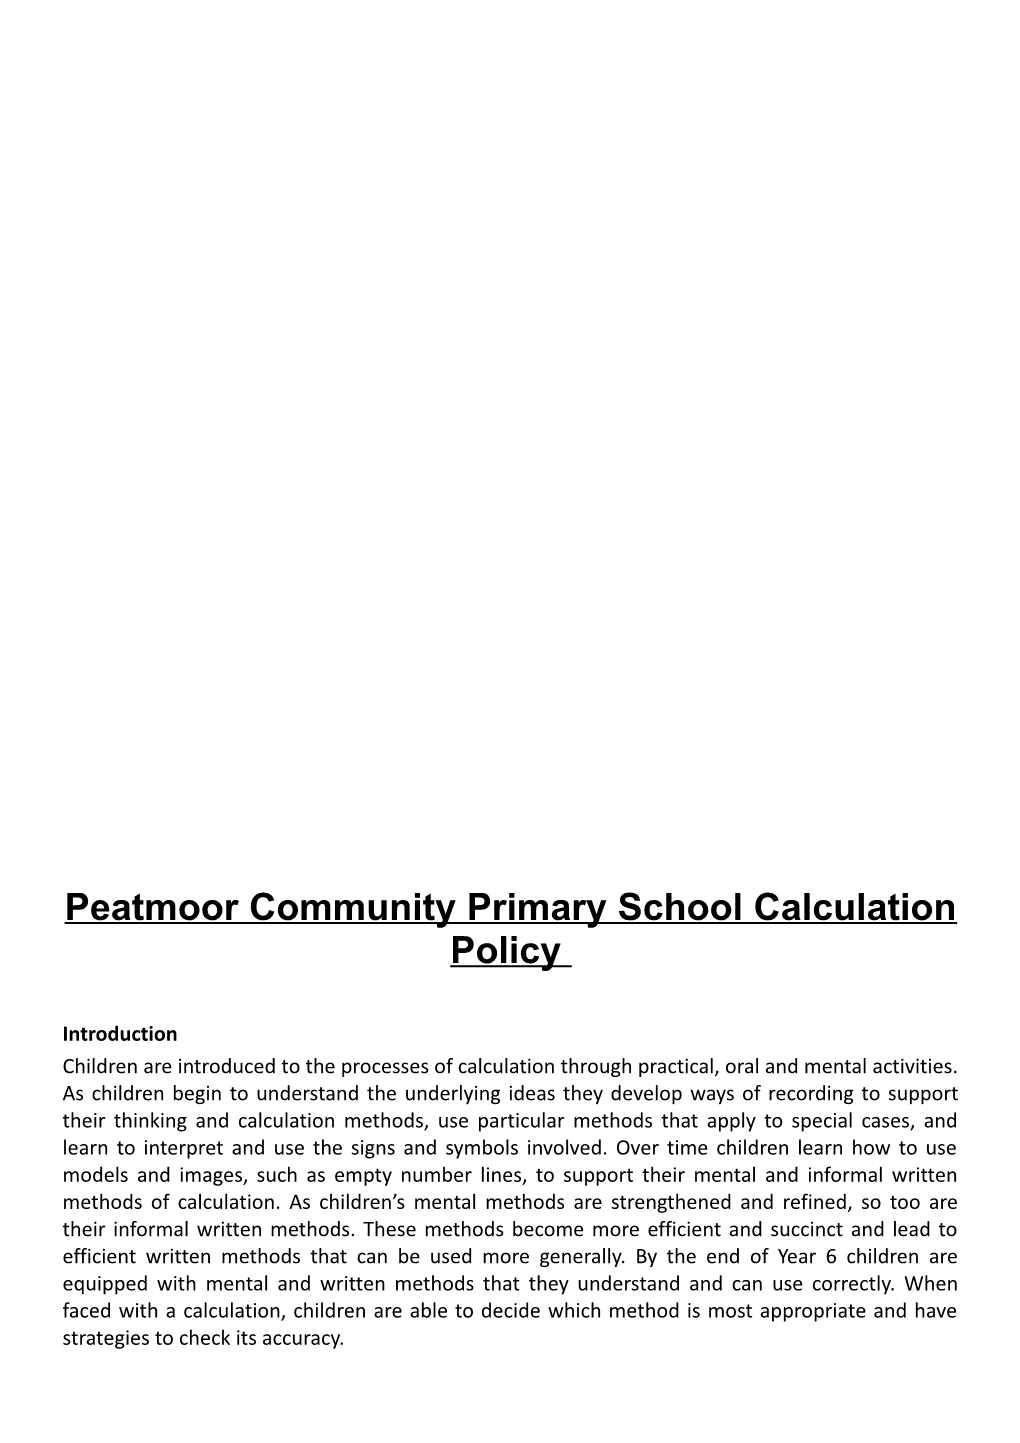 Peatmoor Community Primary School Calculation Policy